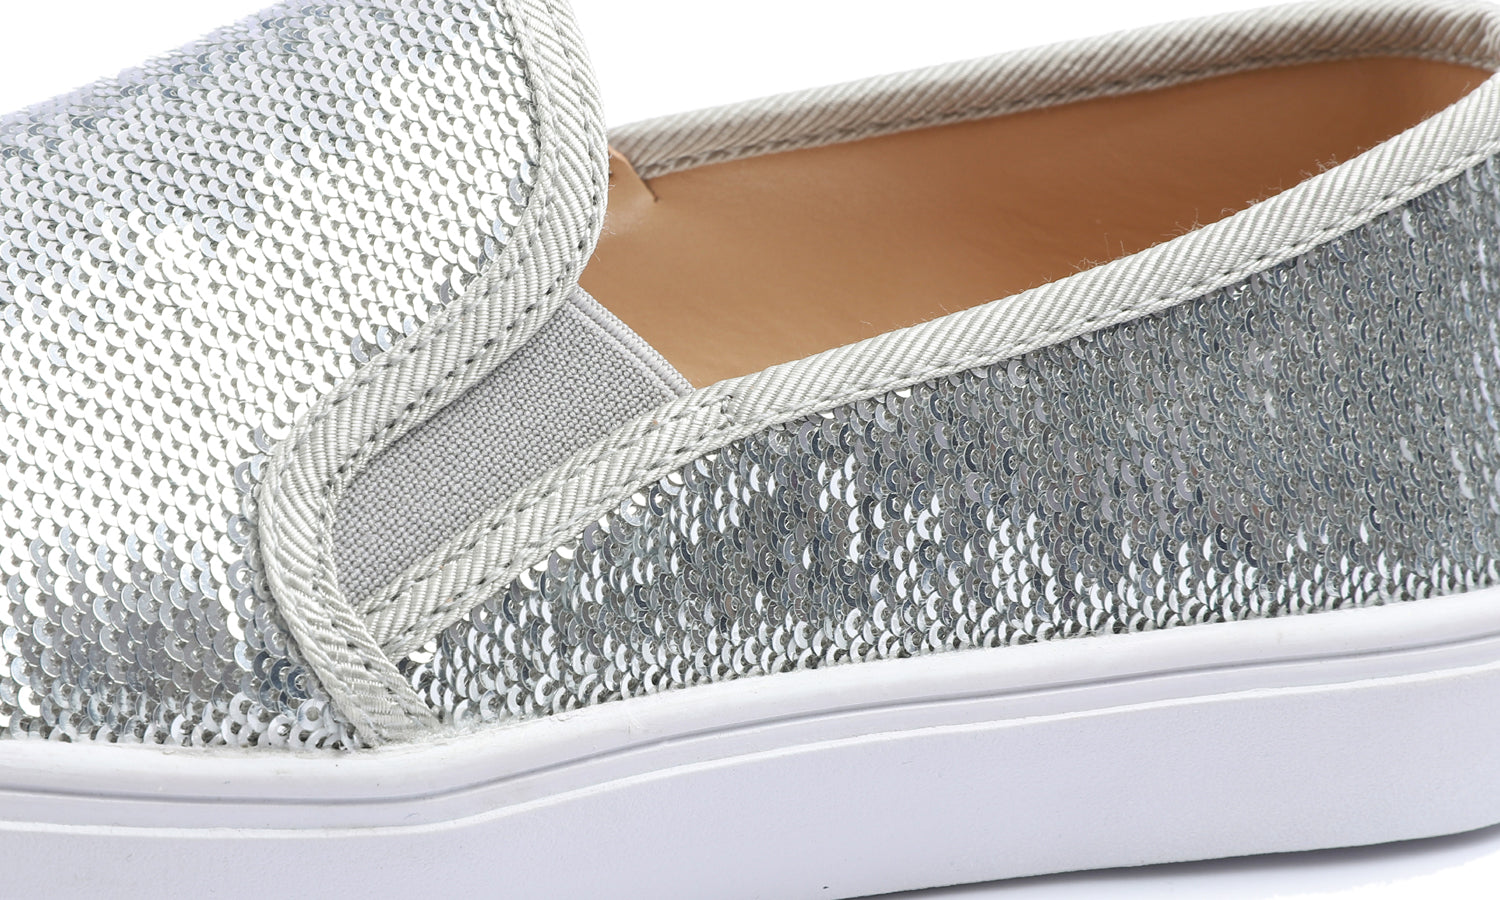 Feversole Women's Silver Sequin Slip On Sneaker Casual Flat Loafers